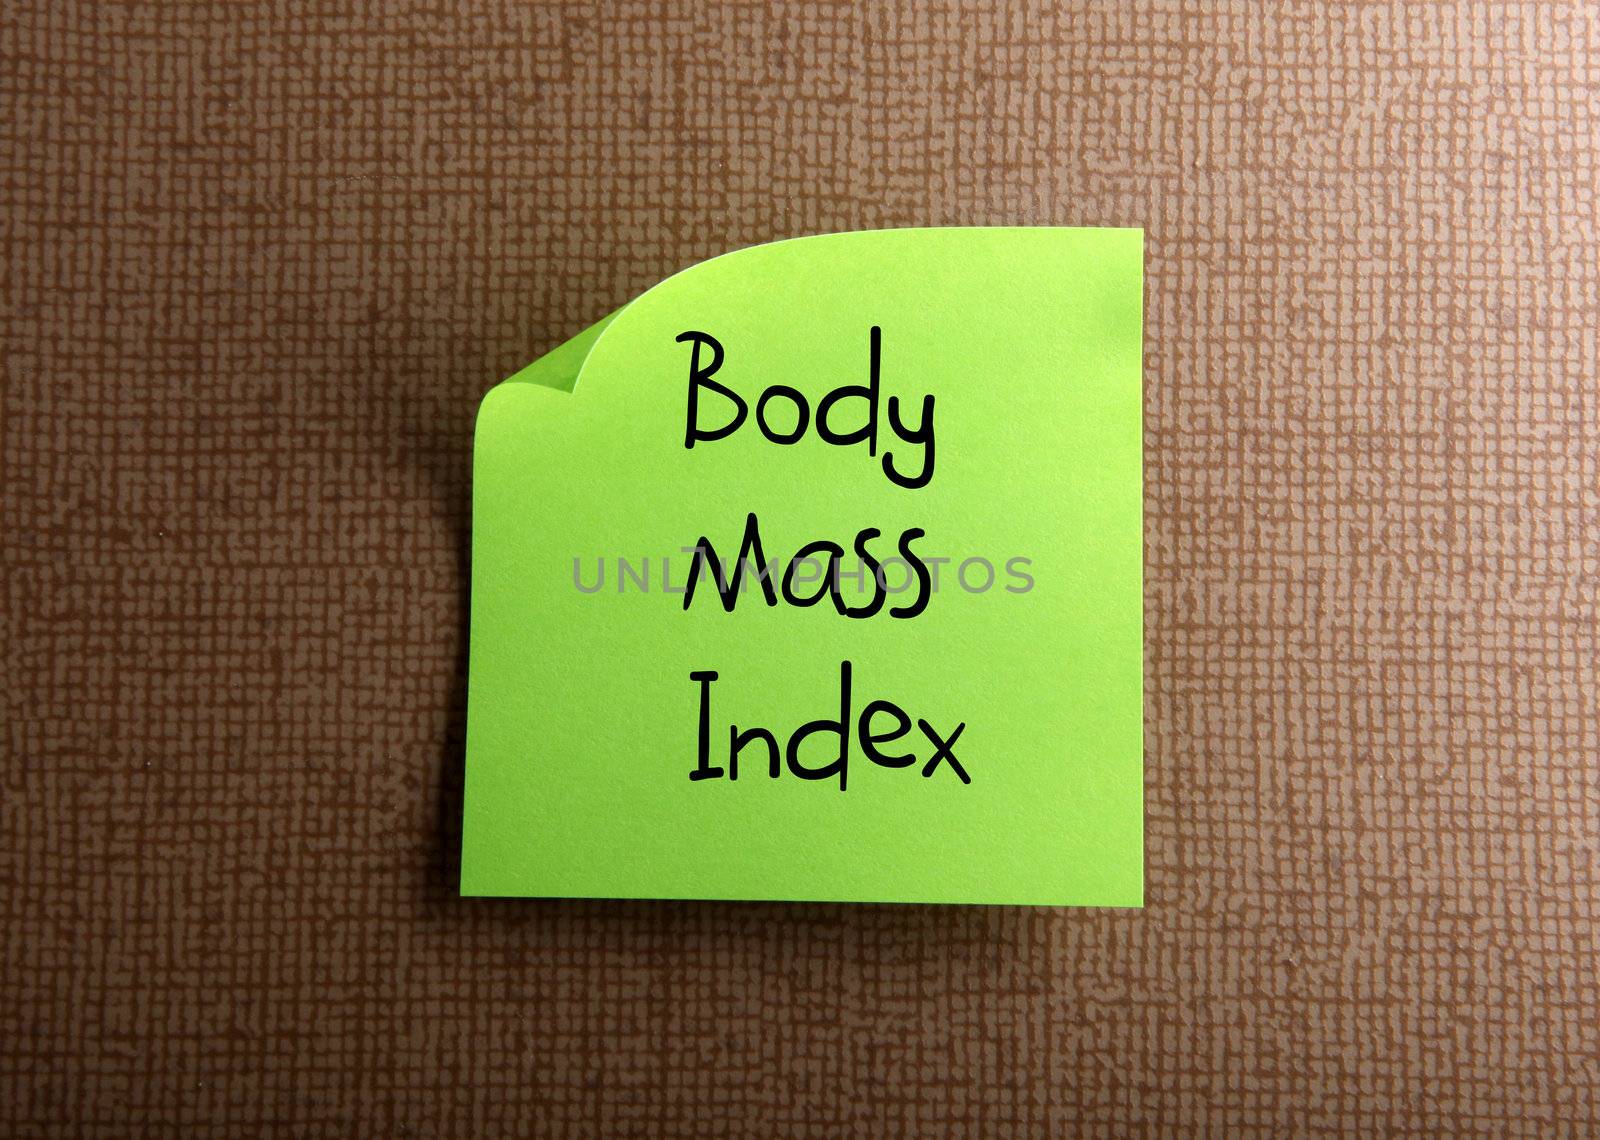 Body Mass Index by nenov